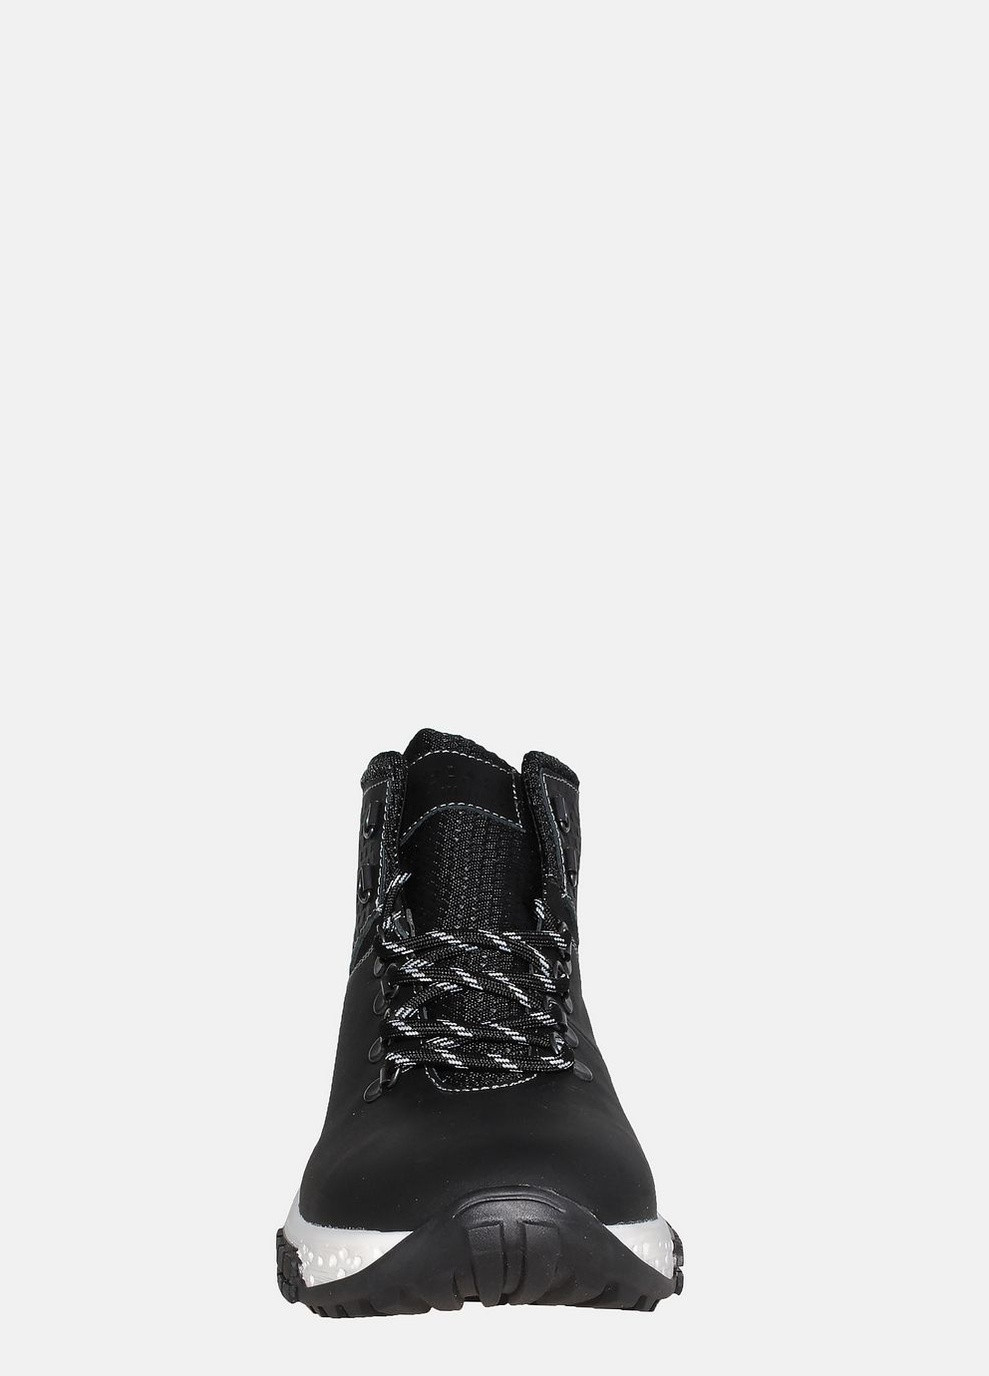 Черные зимние ботинки 820винт ч(б ) черный Fabiani